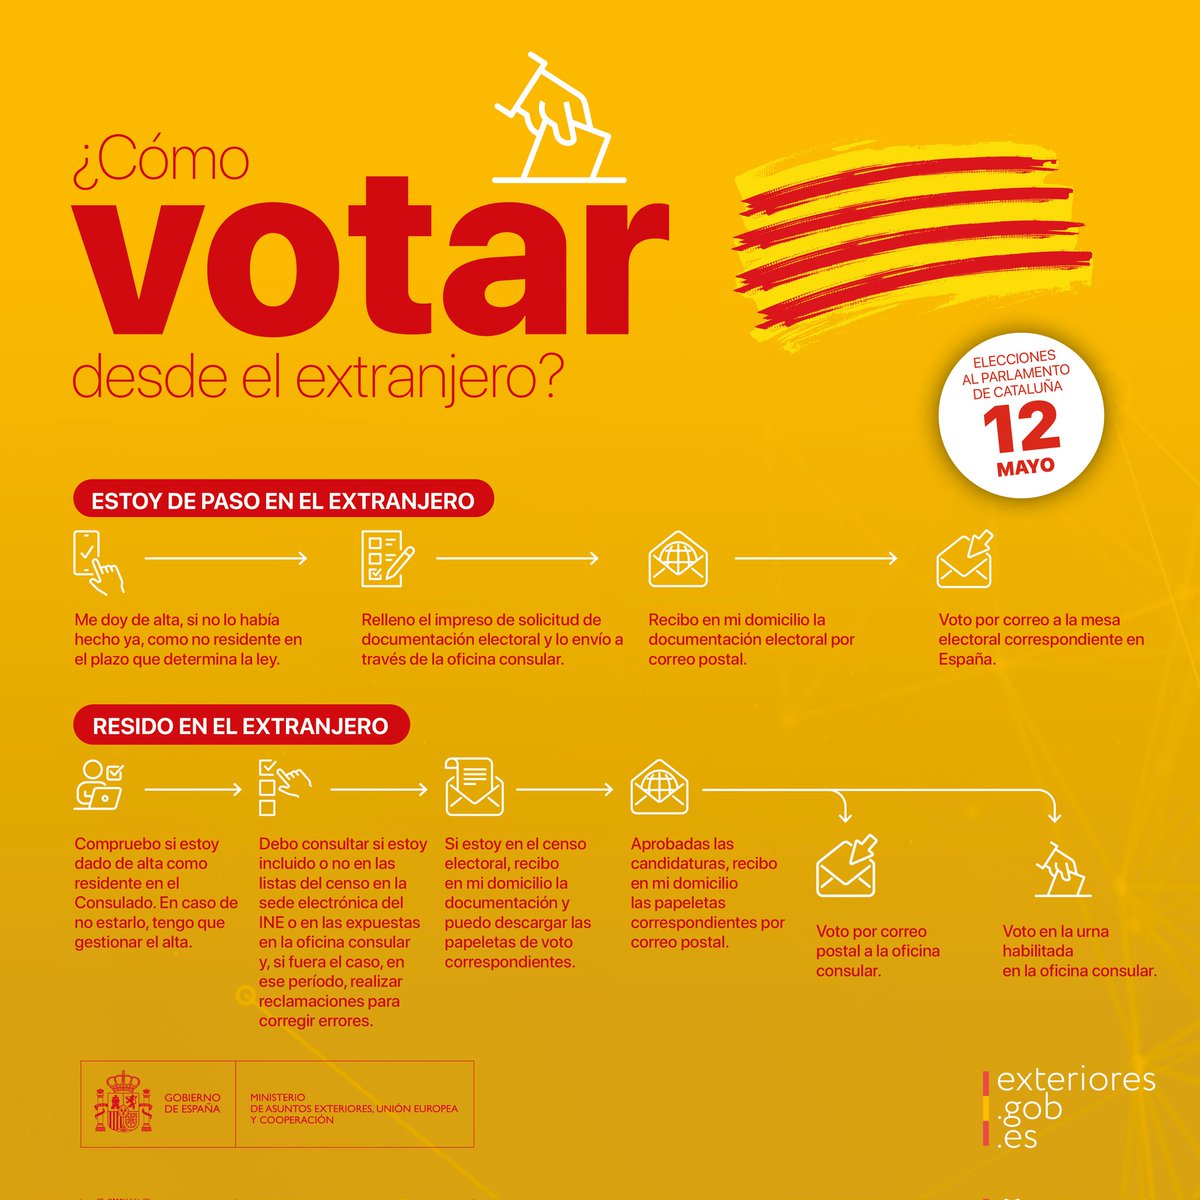 📩 Elecciones al Parlamento de Cataluña 🗓️ 12 de mayo de 2024 📢 Este sábado 4 de mayo comienza el voto en urna 🗳 Toda la información sobre el voto en urna en la circular 2 👉bit.ly/4cp3Jk4